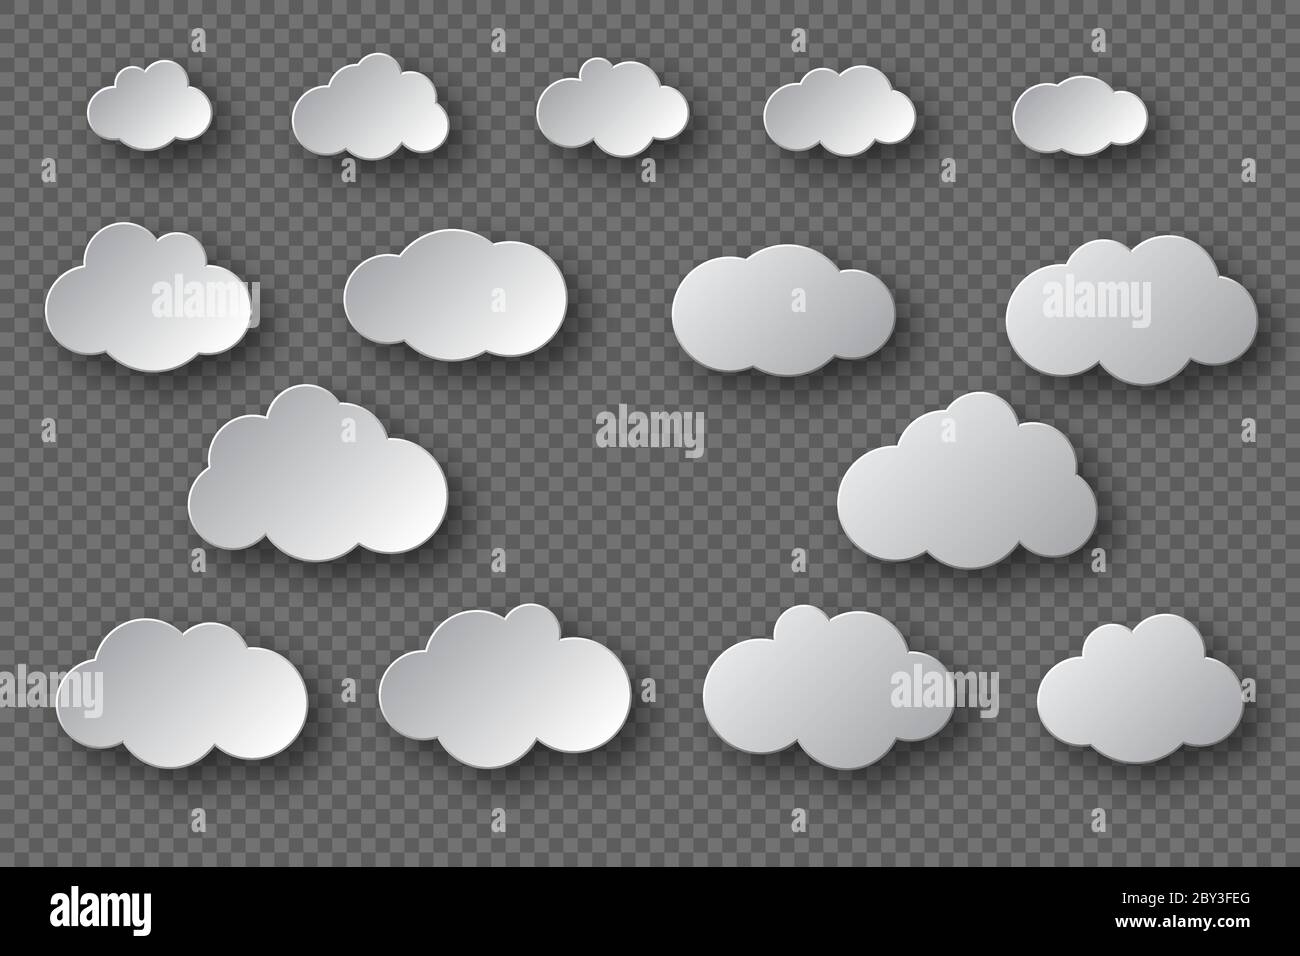 Papier geschnitten weiße Wolken Sammlung. 3d-Effekt mit Schatten. Dekorative Elemente auf transparentem Hintergrund isoliert, Vektor-Illustration. Stock Vektor